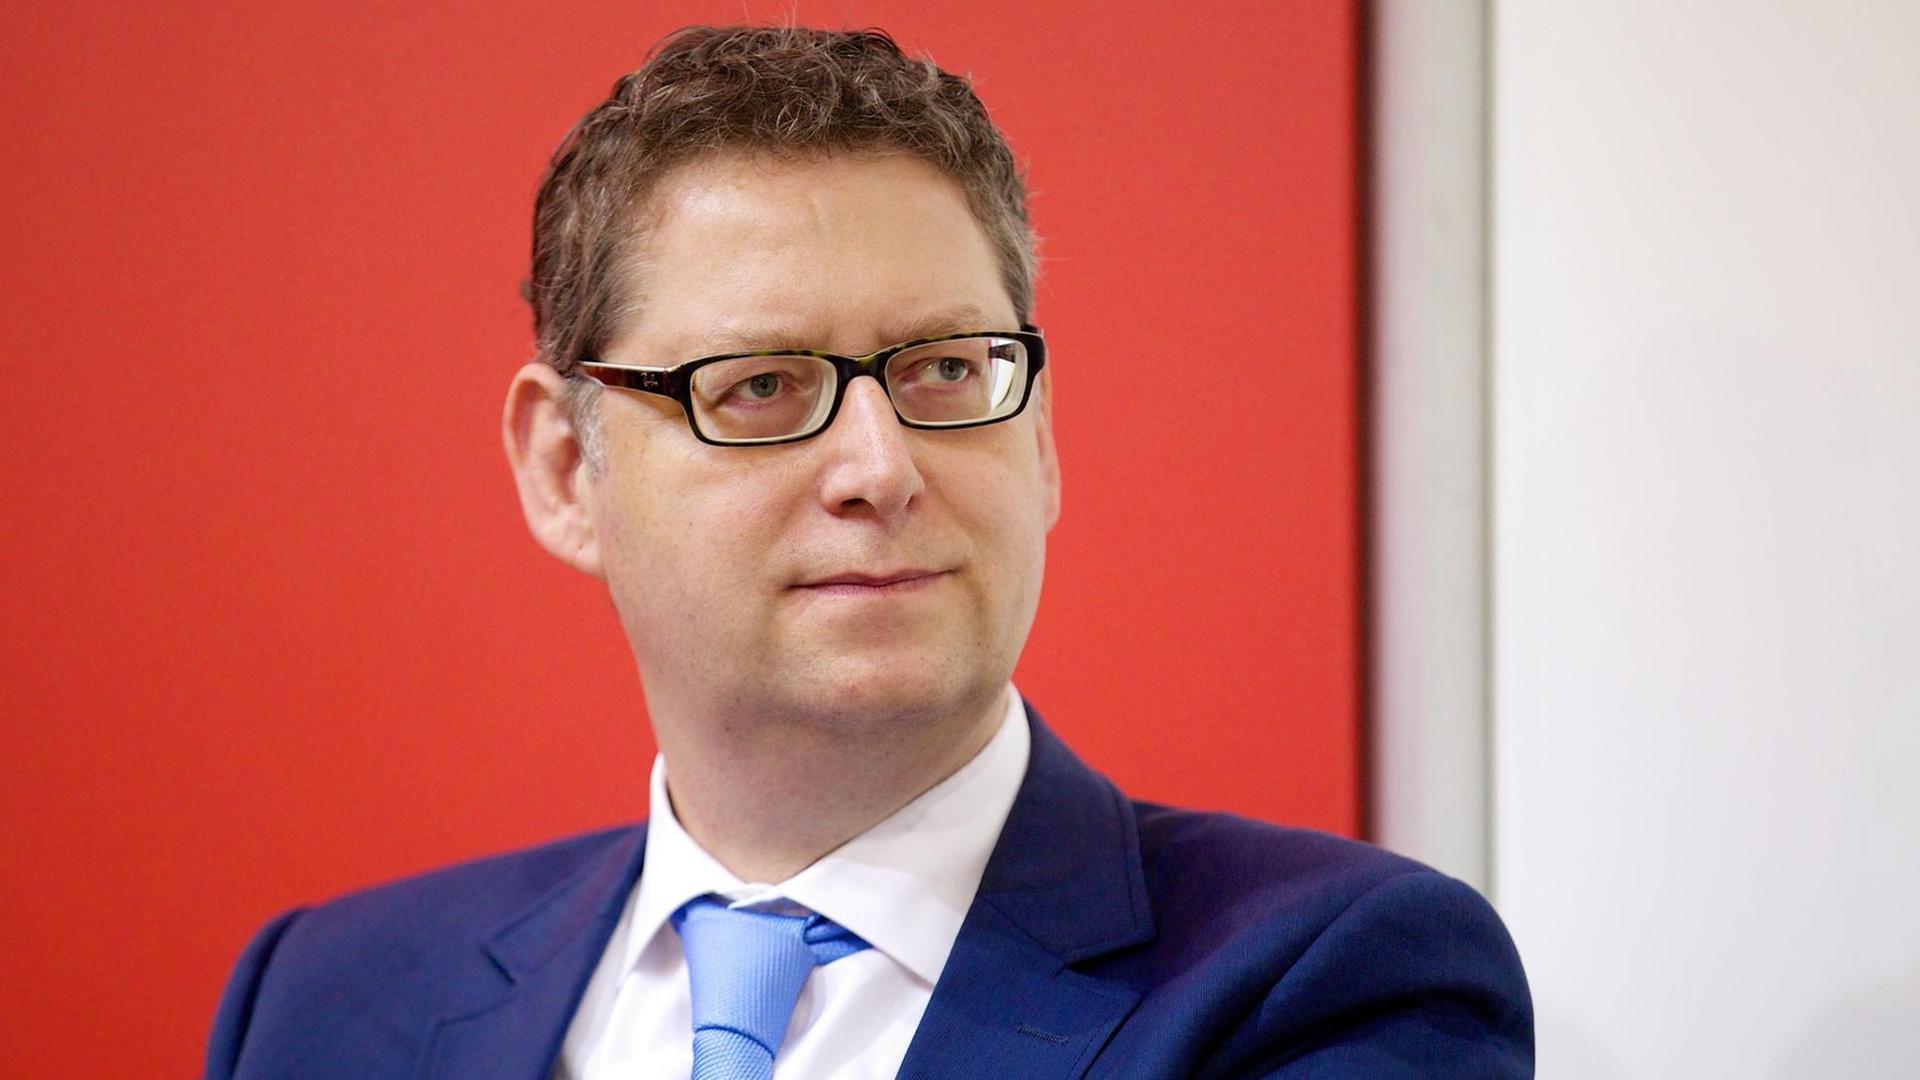 Der SPD-Politiker Thorsten Schäfer-Gümbel